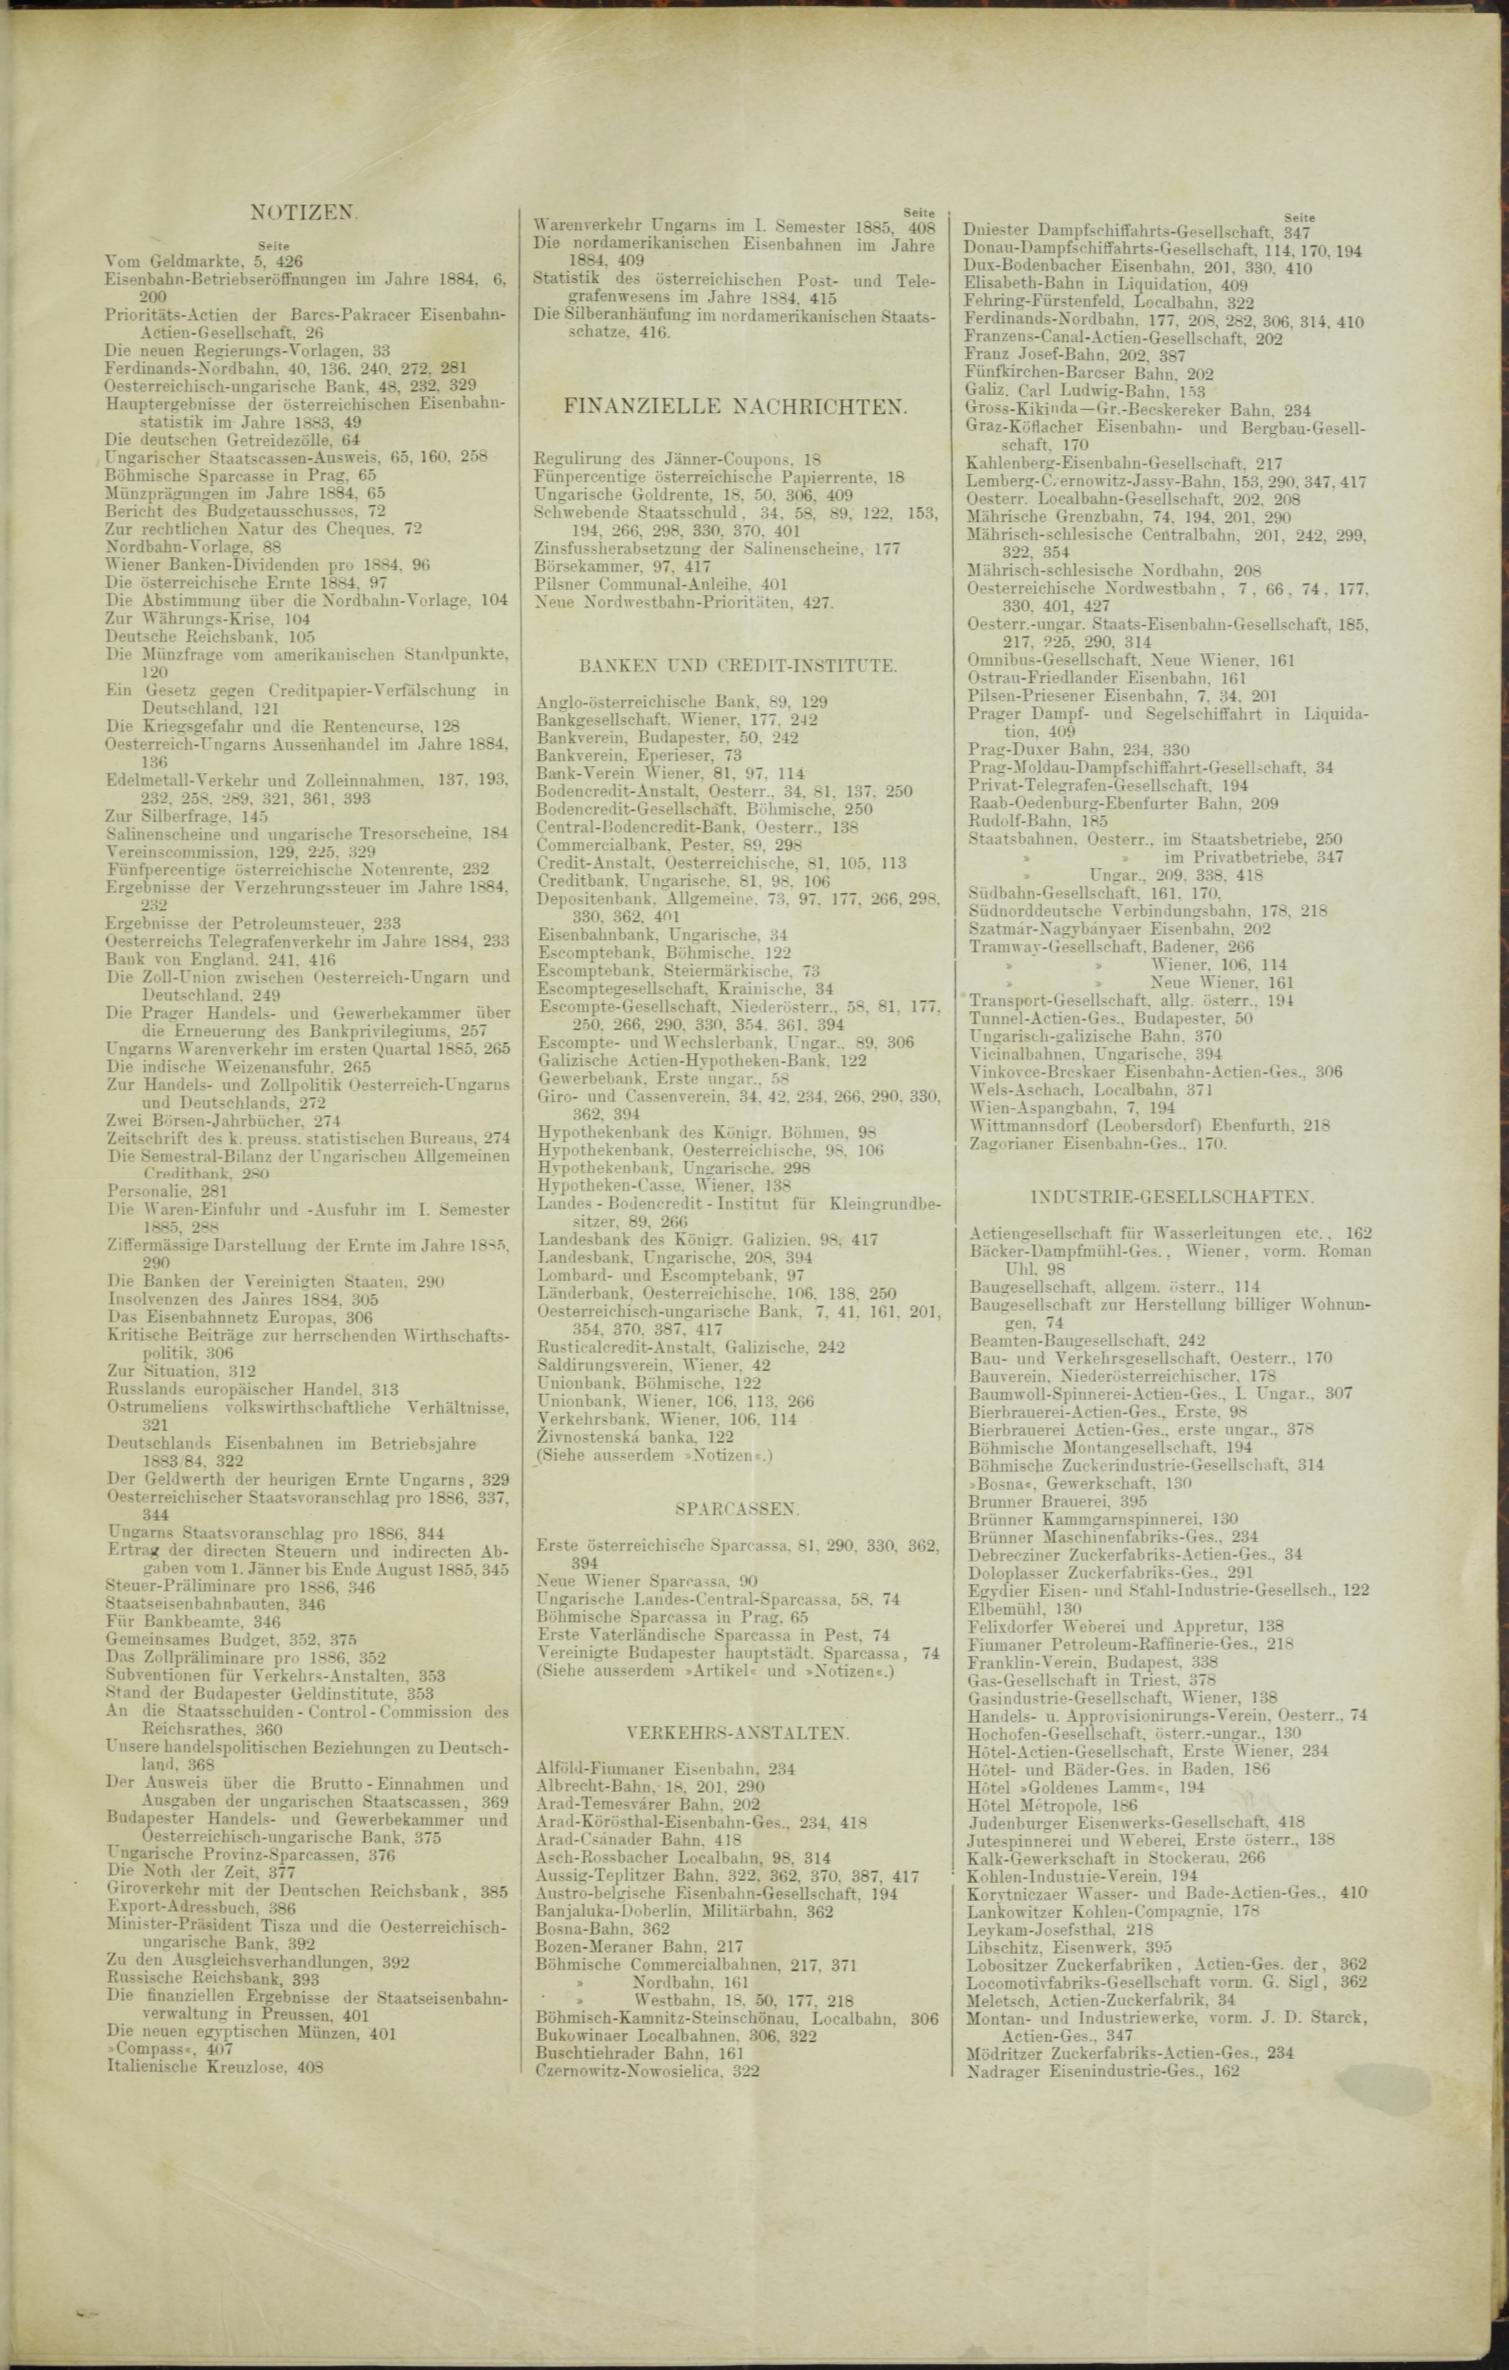 Der Tresor 15.10.1885 - Seite 11